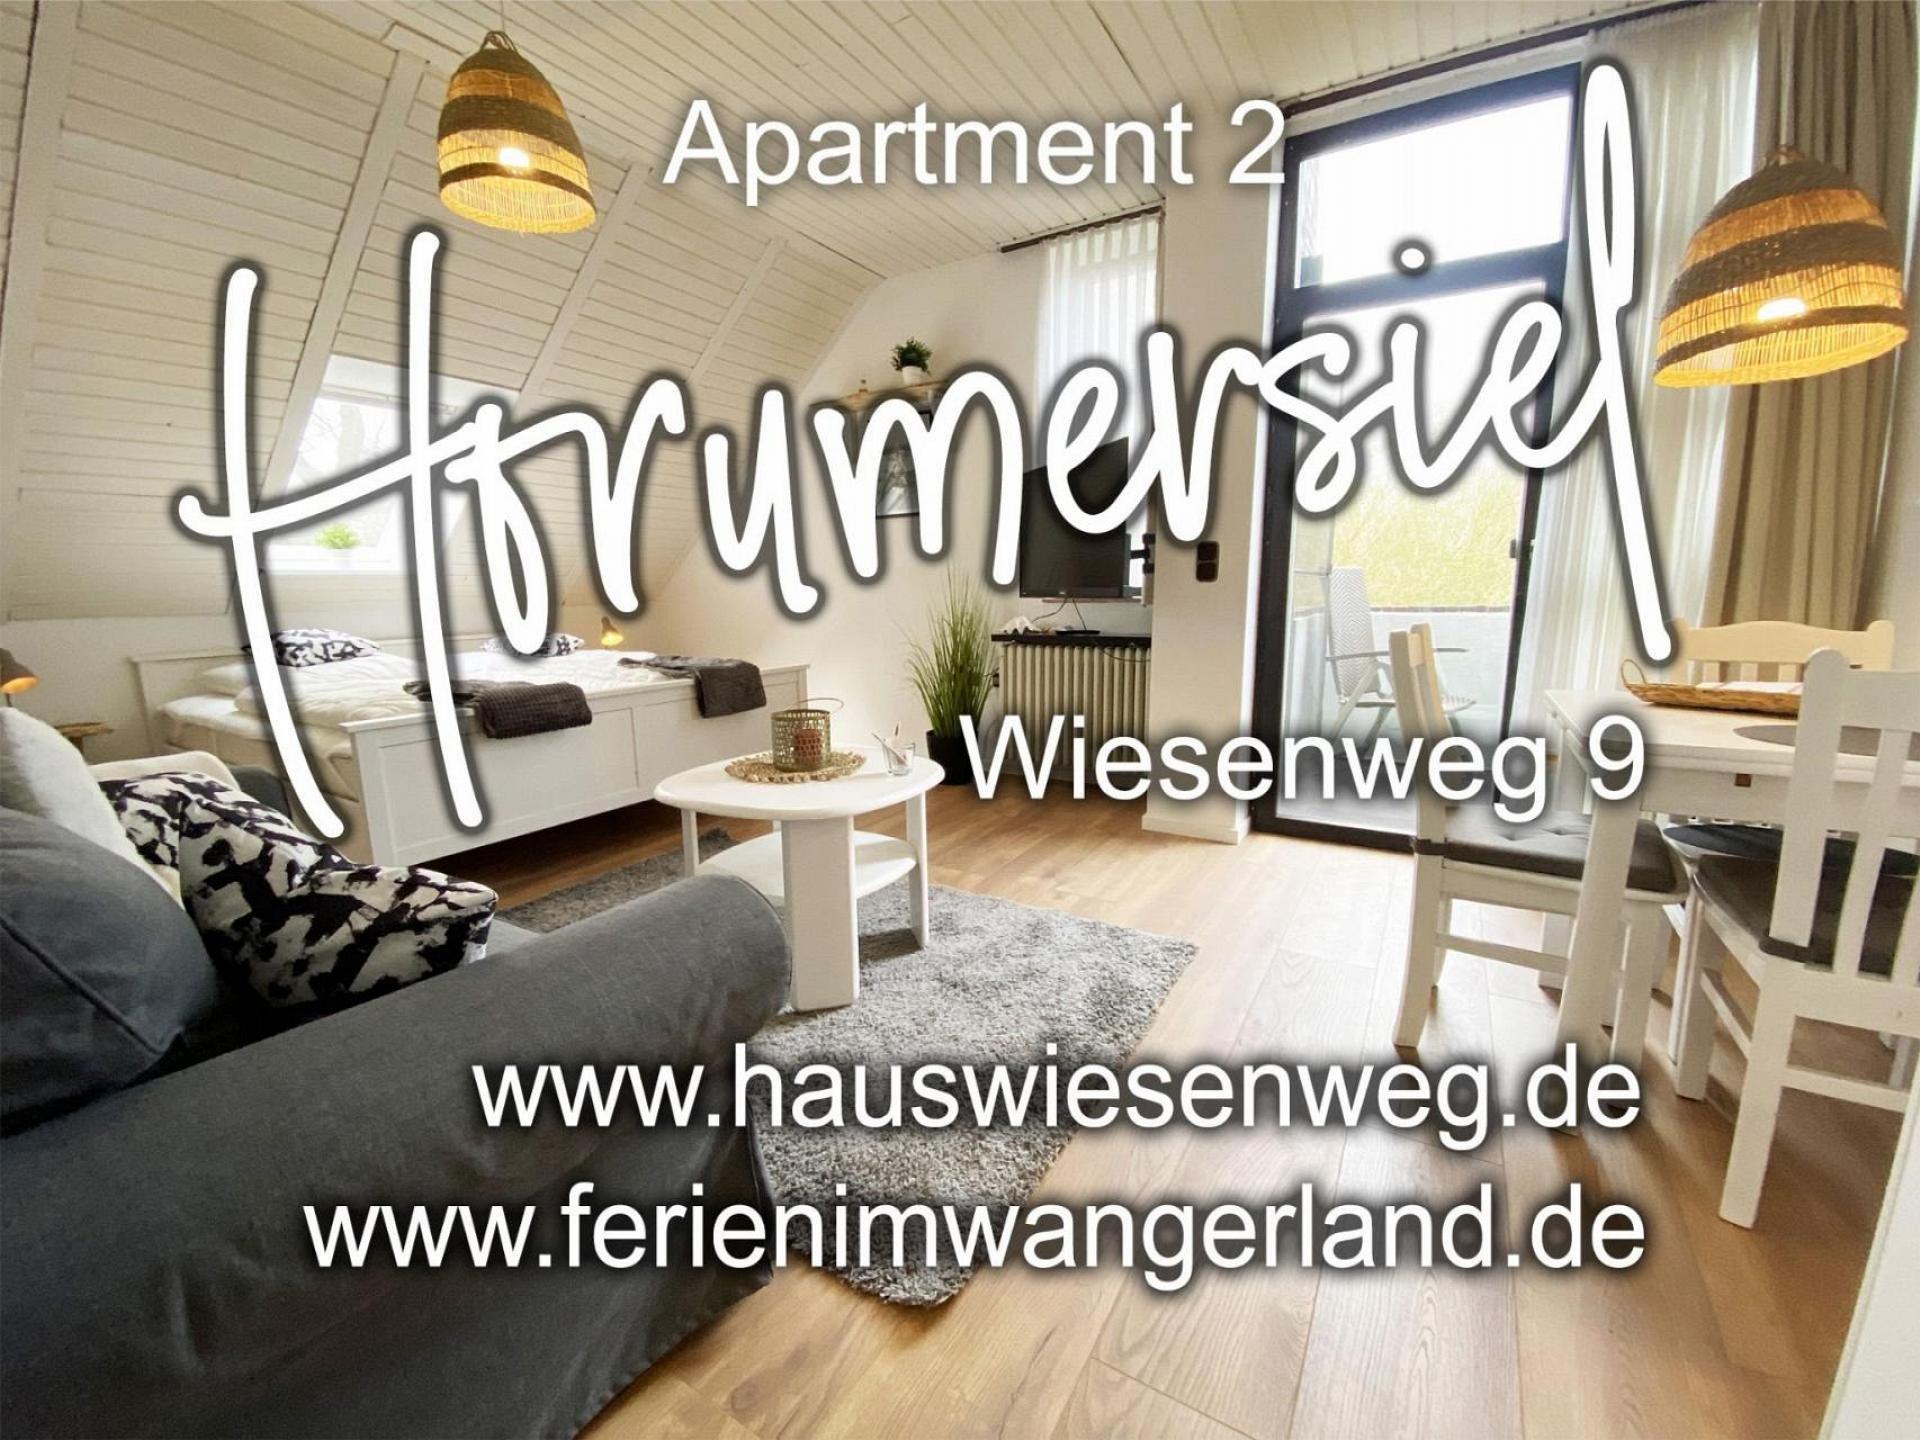 Ferien im Wangerland - Haus Wiesenweg - Apartment 2 (1.OG)